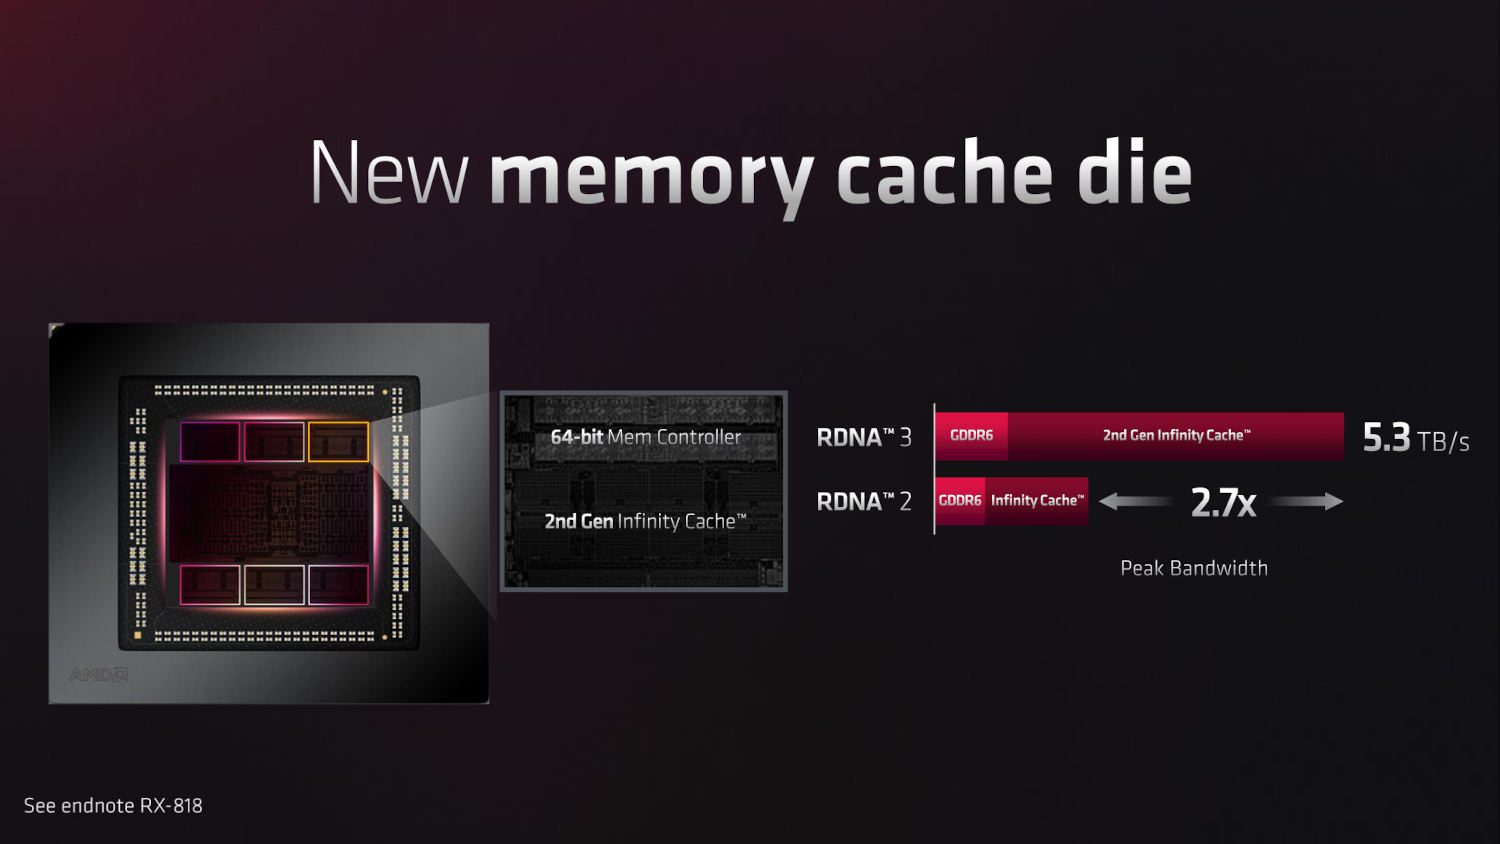 nowy podsystem pamięci w kartach rdna 3